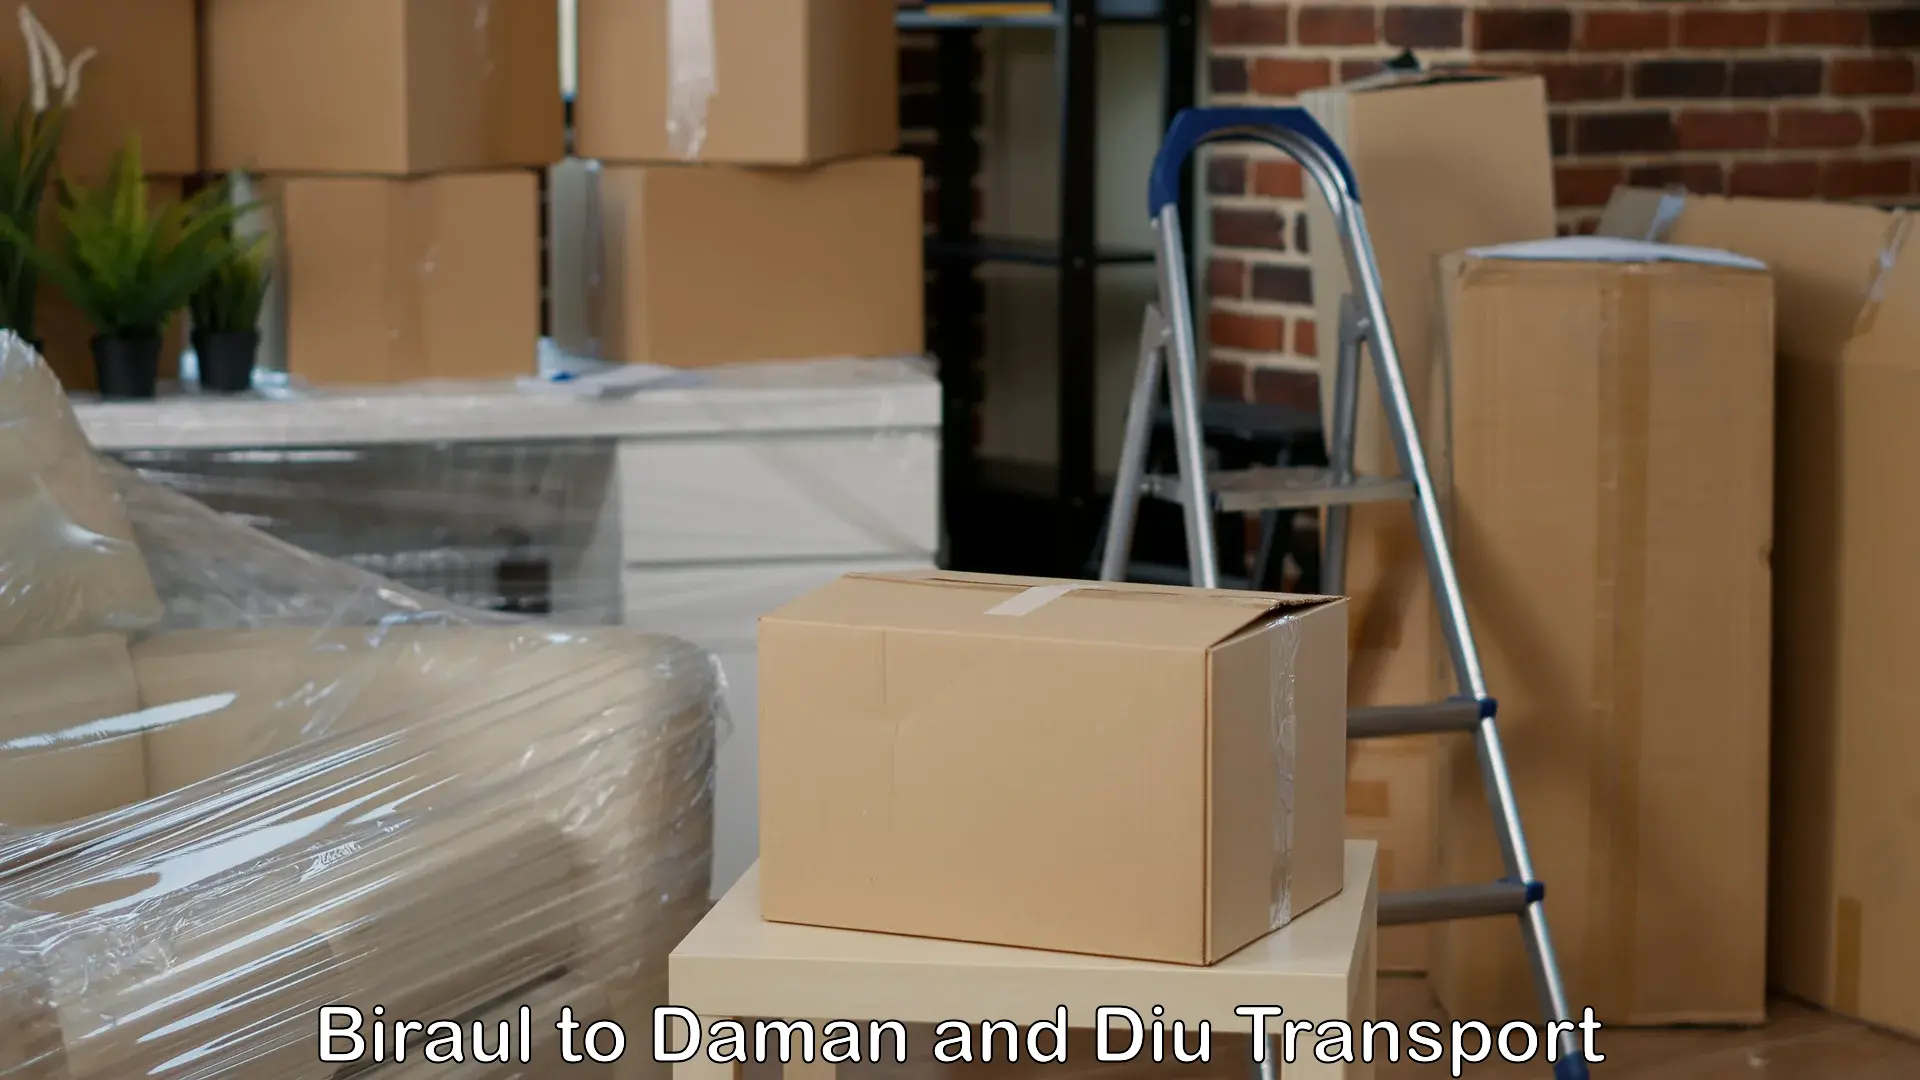 Logistics transportation services Biraul to Daman and Diu